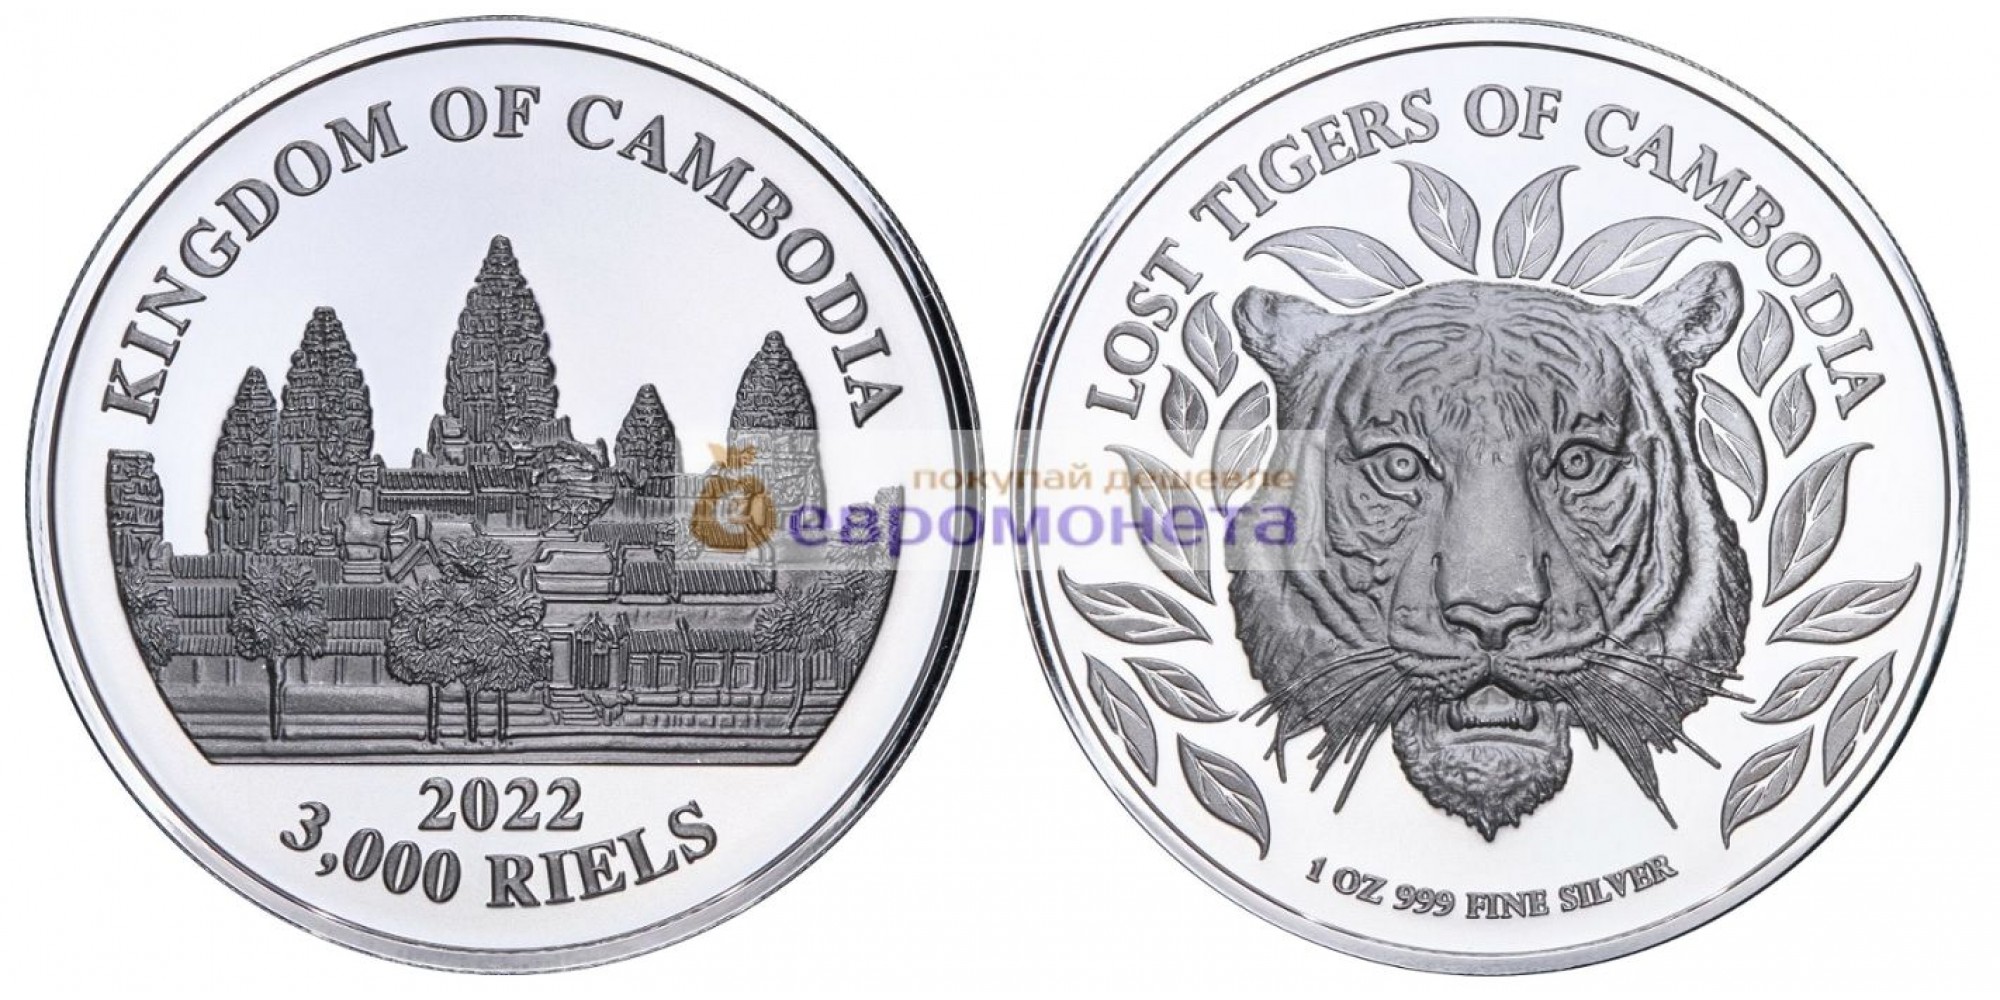 Камбоджа 3000 риелей 2022 год Потерянные тигры Камбоджи. Серебро унция 999 пробы